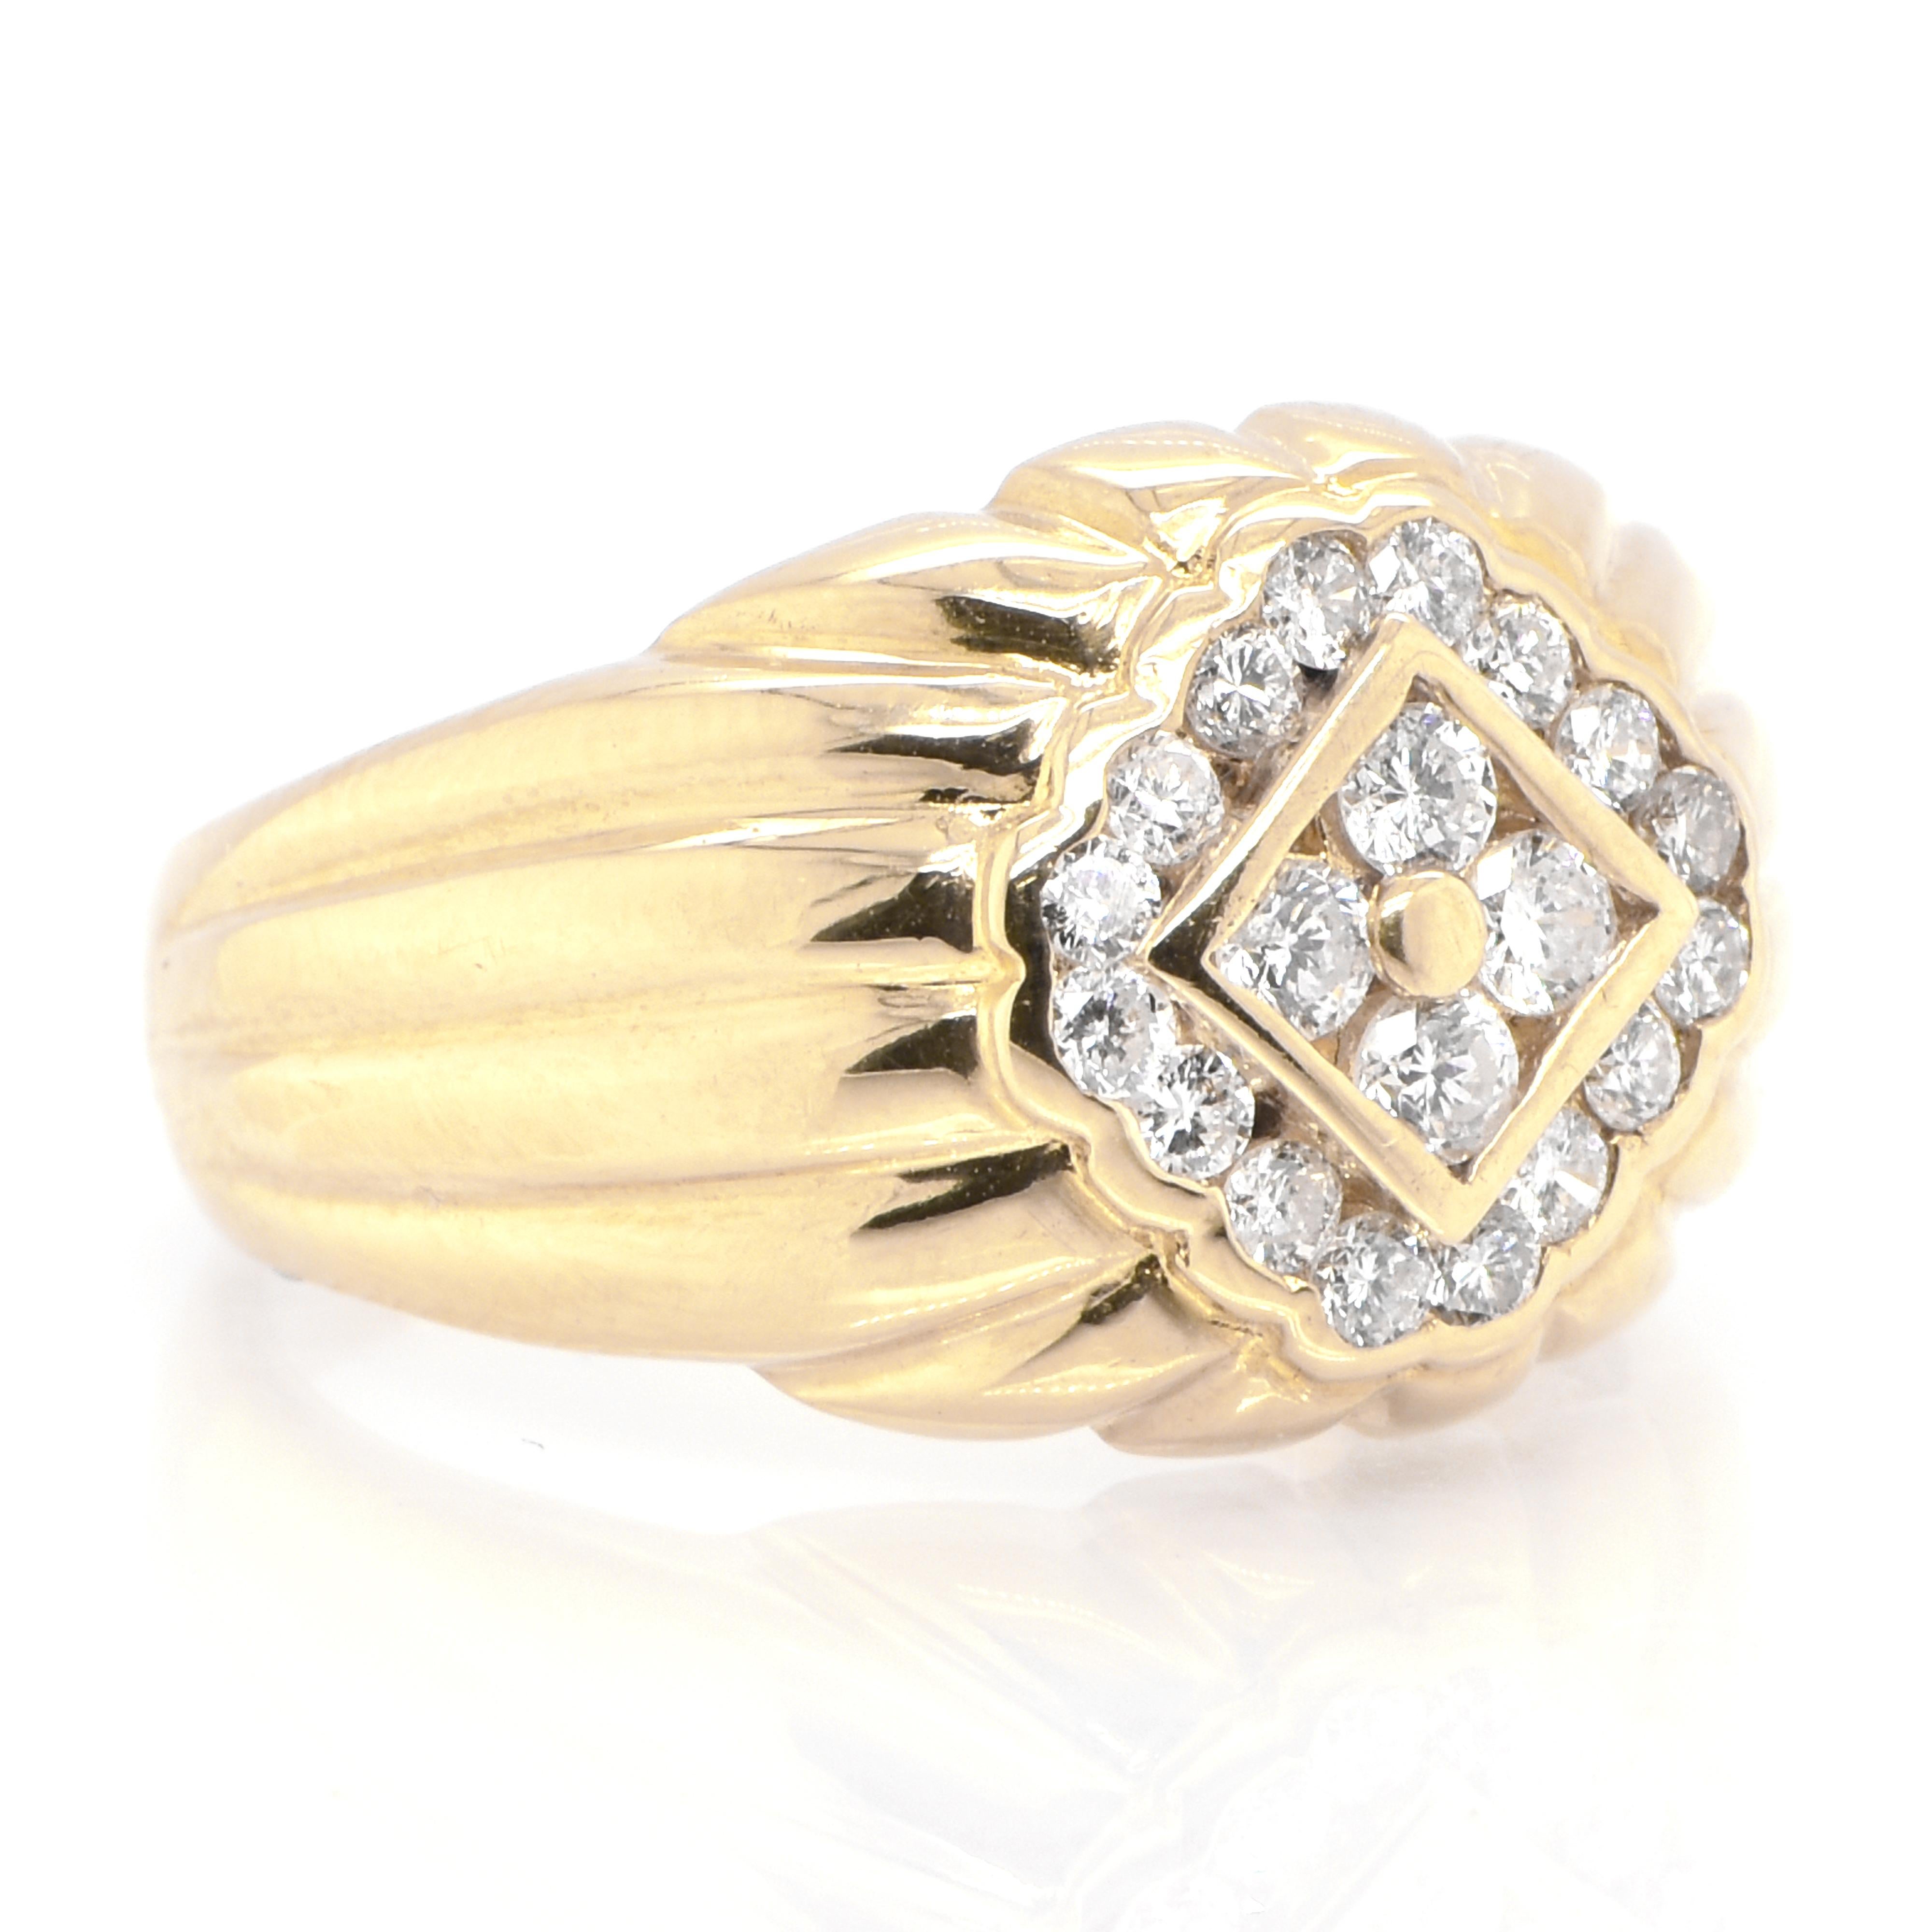 Une magnifique bague ornée de diamants Melee de 0,52 carats en or jaune 18 carats. Les diamants ont été ornés et chéris tout au long de l'histoire de l'humanité et remontent à des milliers d'années. Ils sont classés 10 sur l'échelle de dureté de